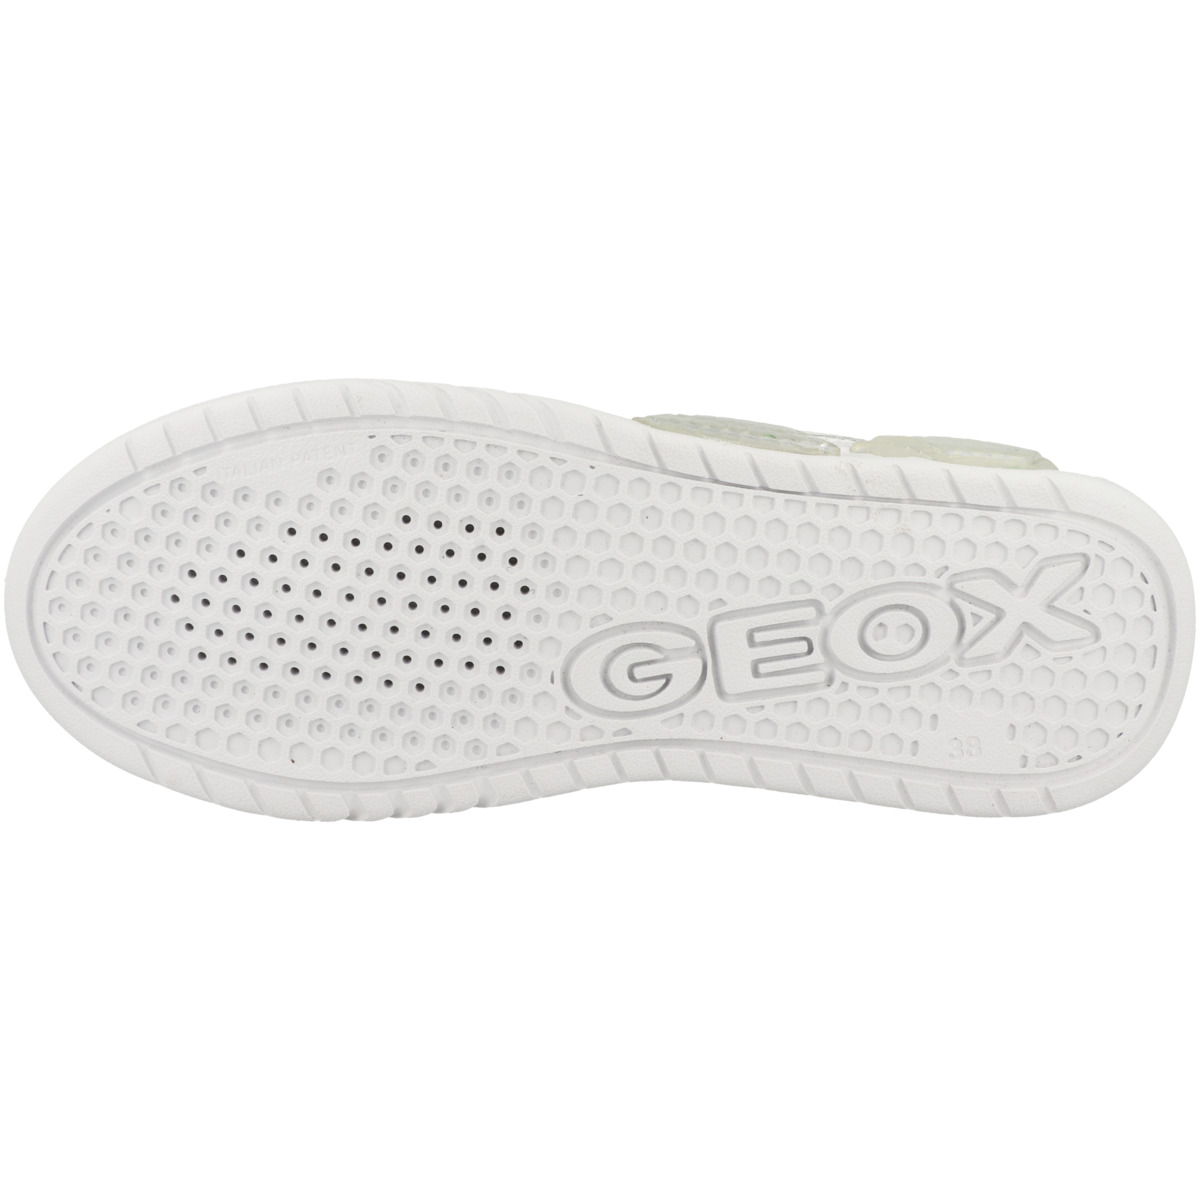 Geox J Illuminus B. B low Sneaker weiss